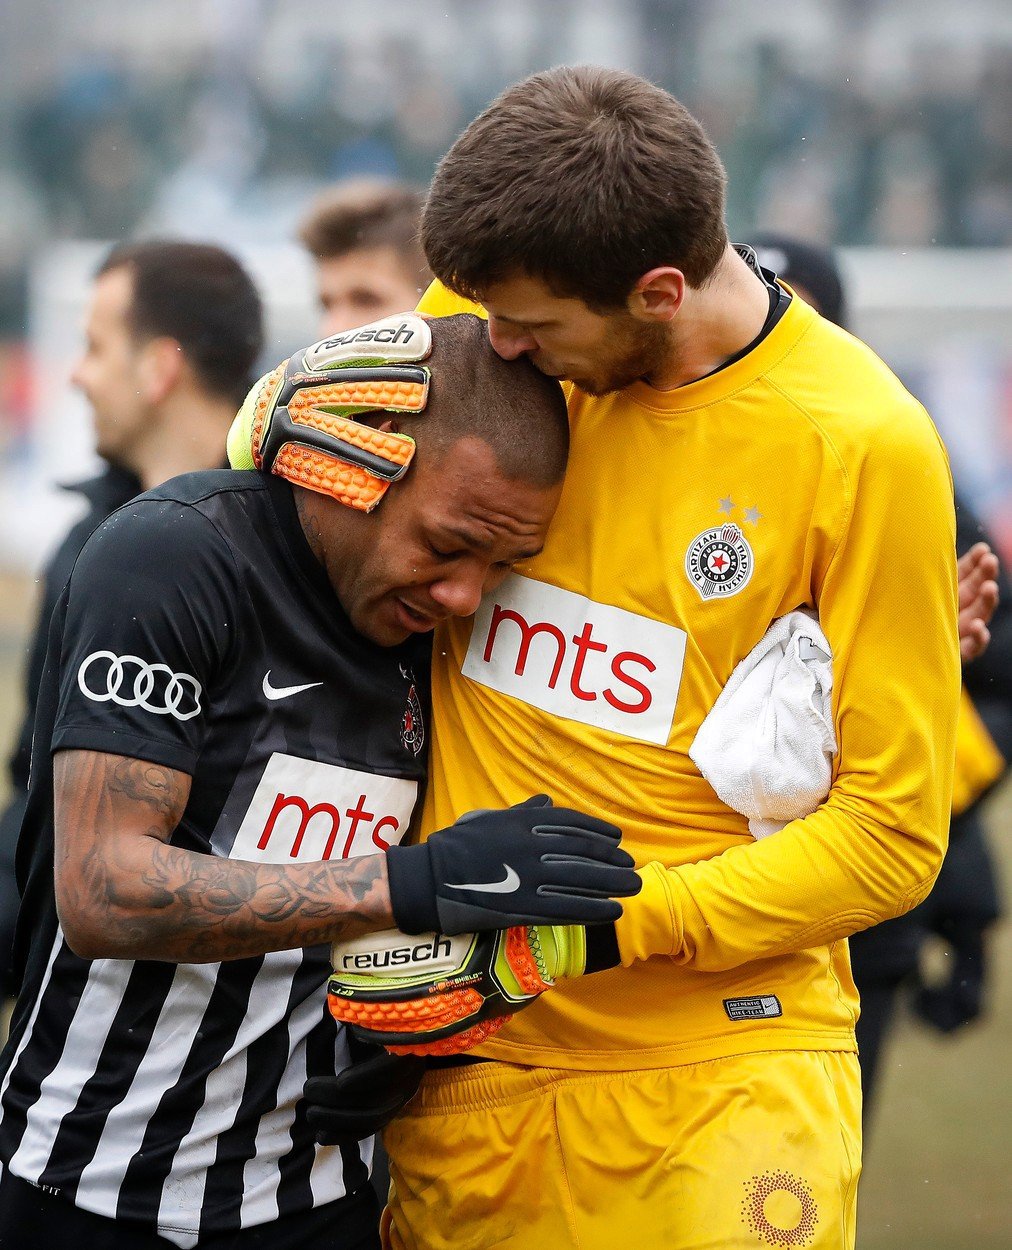 Brazilský fotbalista Partizanu Bělehrad nevydržel rasistické urážky a rozbrečel se, museli ho utěšovat spoluhráči